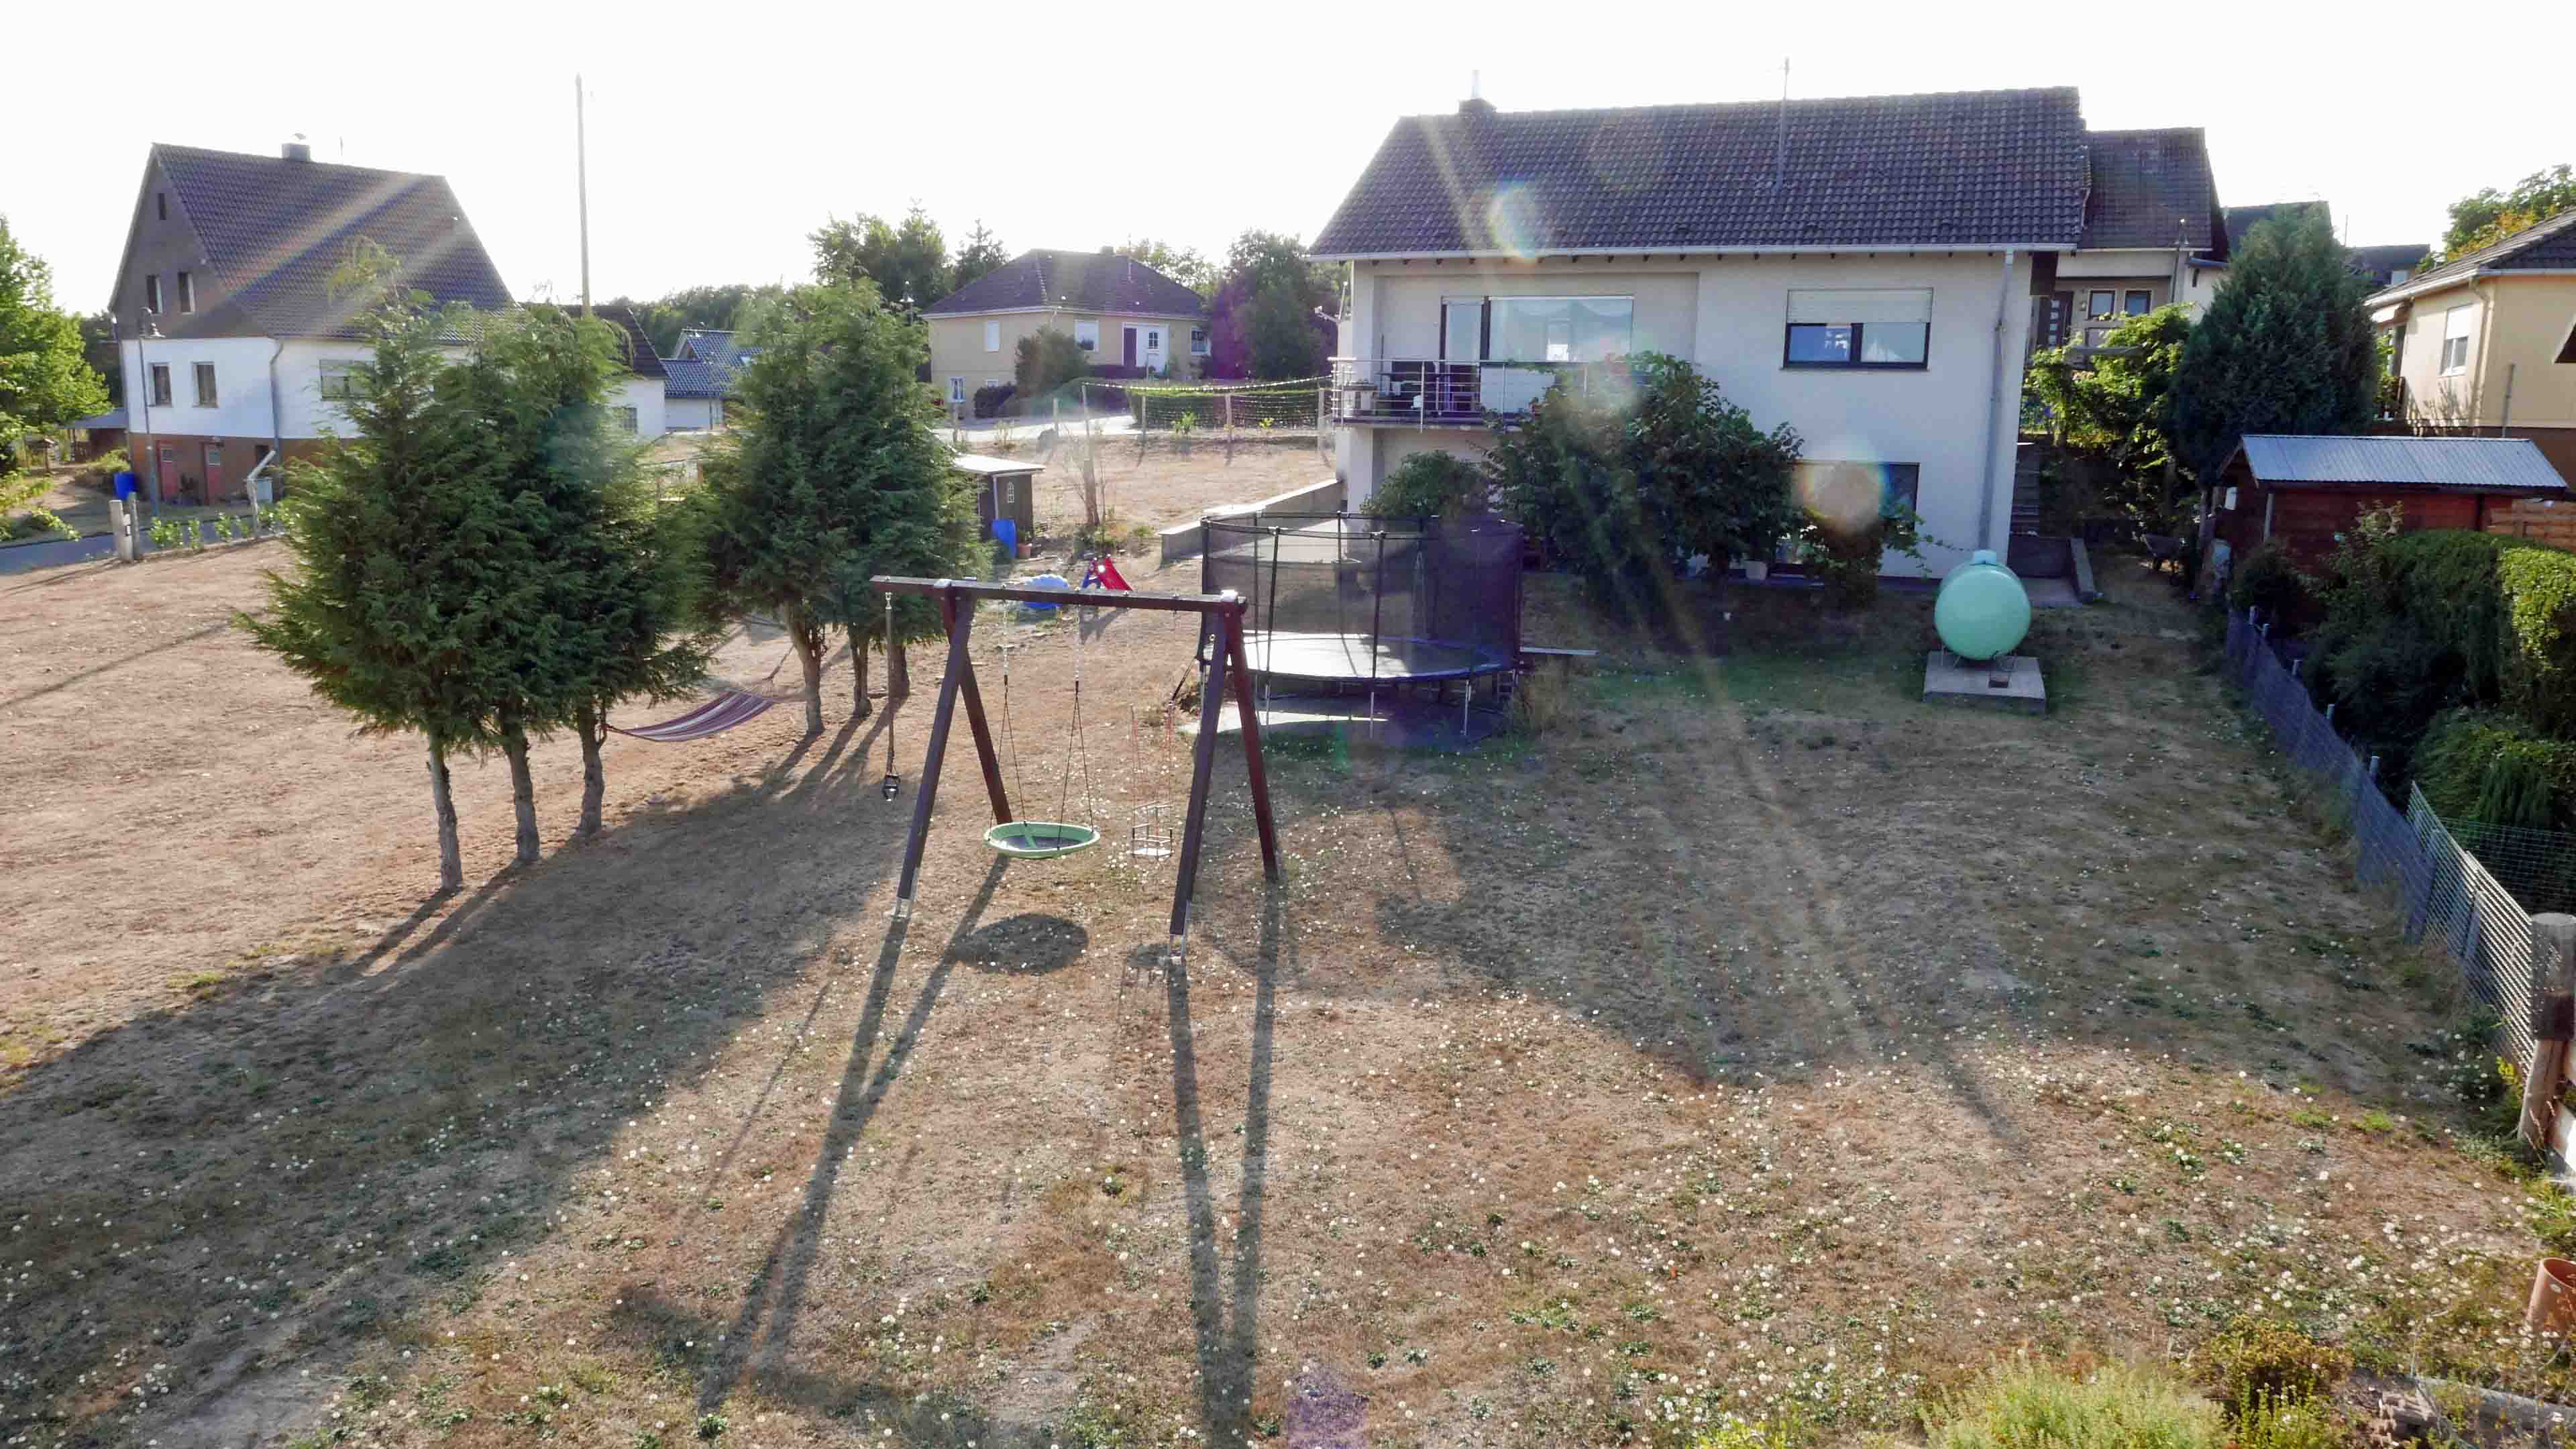 Wissen-Forst: Landleben mit viel Platz, Ruhe und Fernblick, 853 m² Grundstück für 235.000 €, oder...